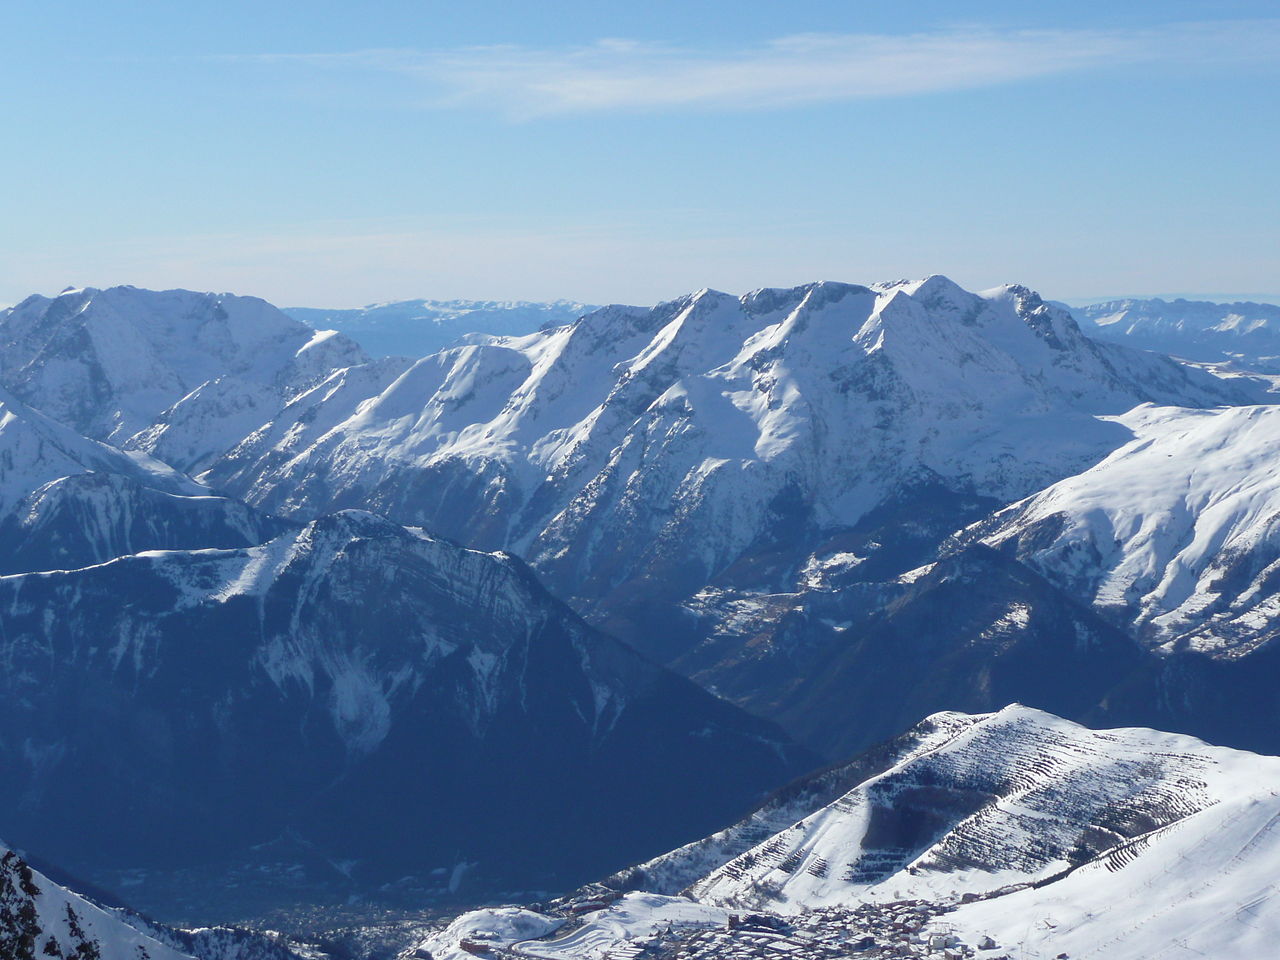 Les stations de ski dans les Alpes du Nord vont des grandes stations de ski renommées aux petites stations de village. © Simdaperce, Wikimedia Commons, cc by sa 3.0